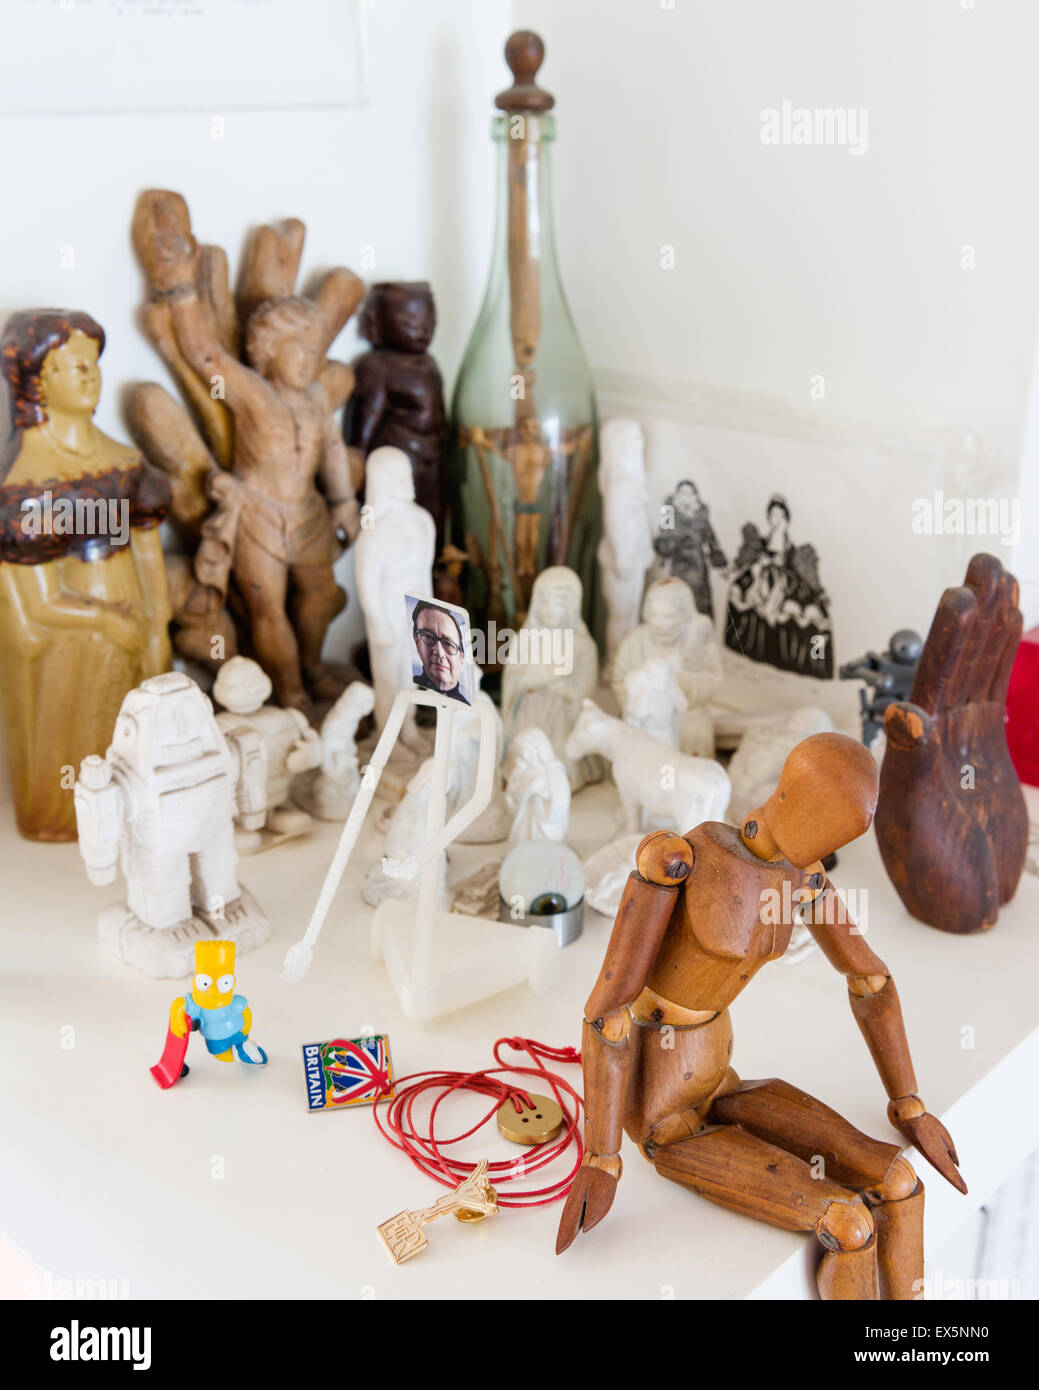 Artisti manichino di legno circondato da piccole statuine scolpite Foto Stock